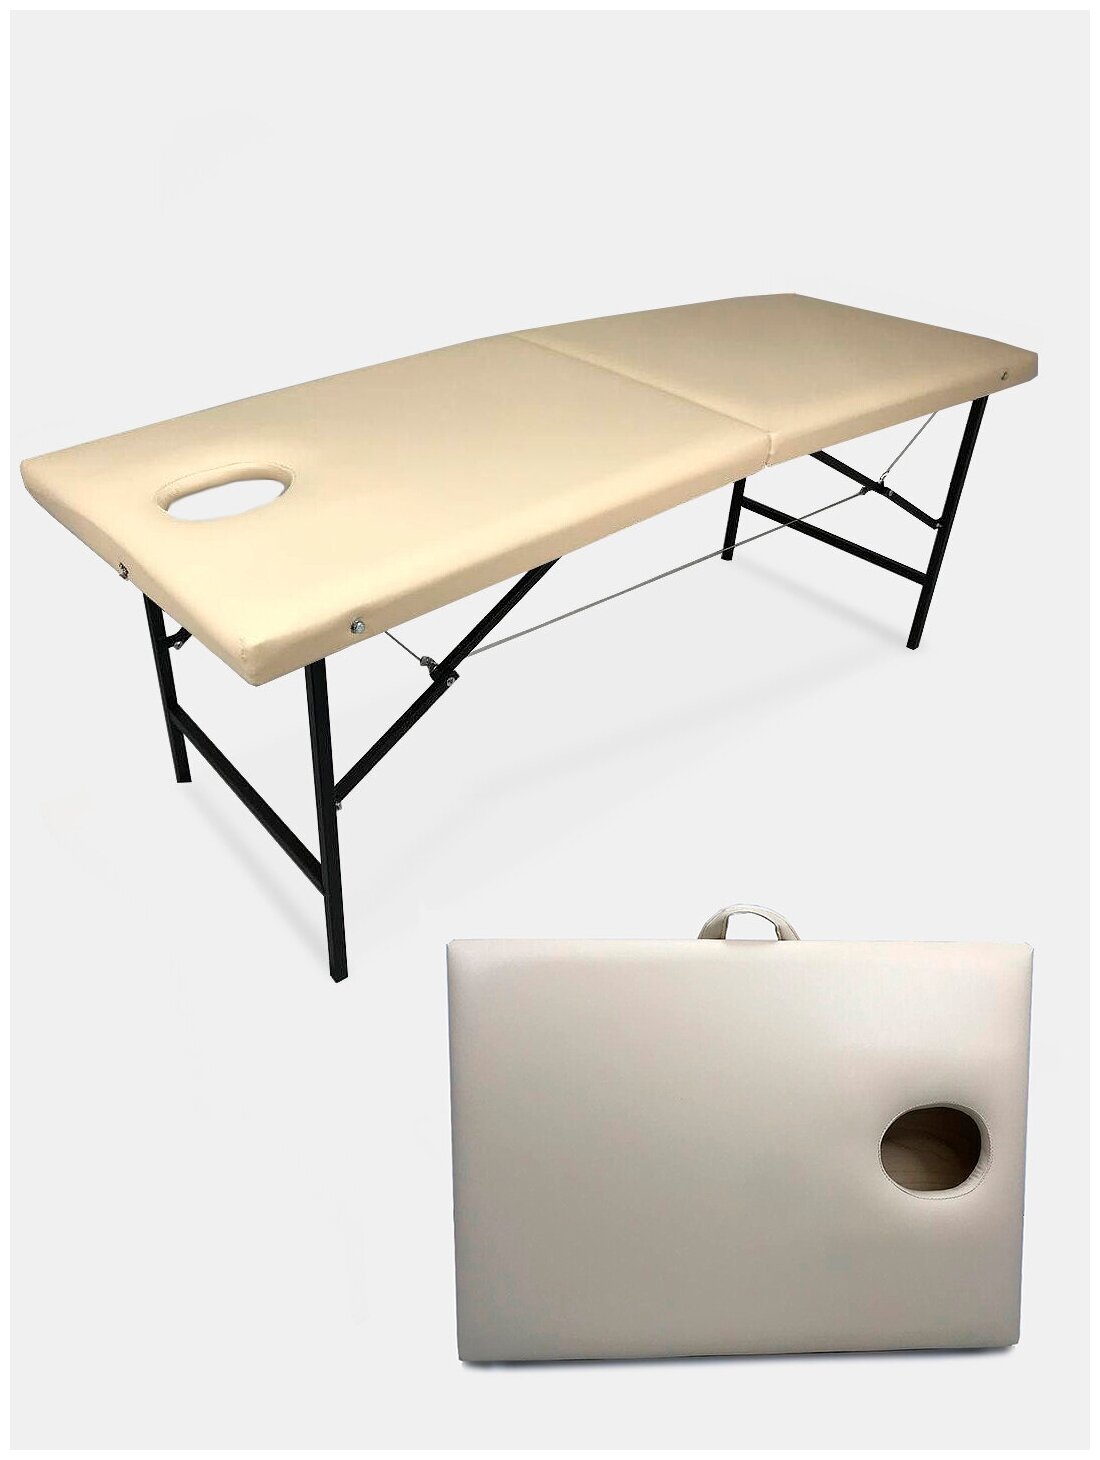 Массажный стол складной с вырезом для лица 180х60х72 см Бежевый . Стол для массажа. Кушетка складная массажная.